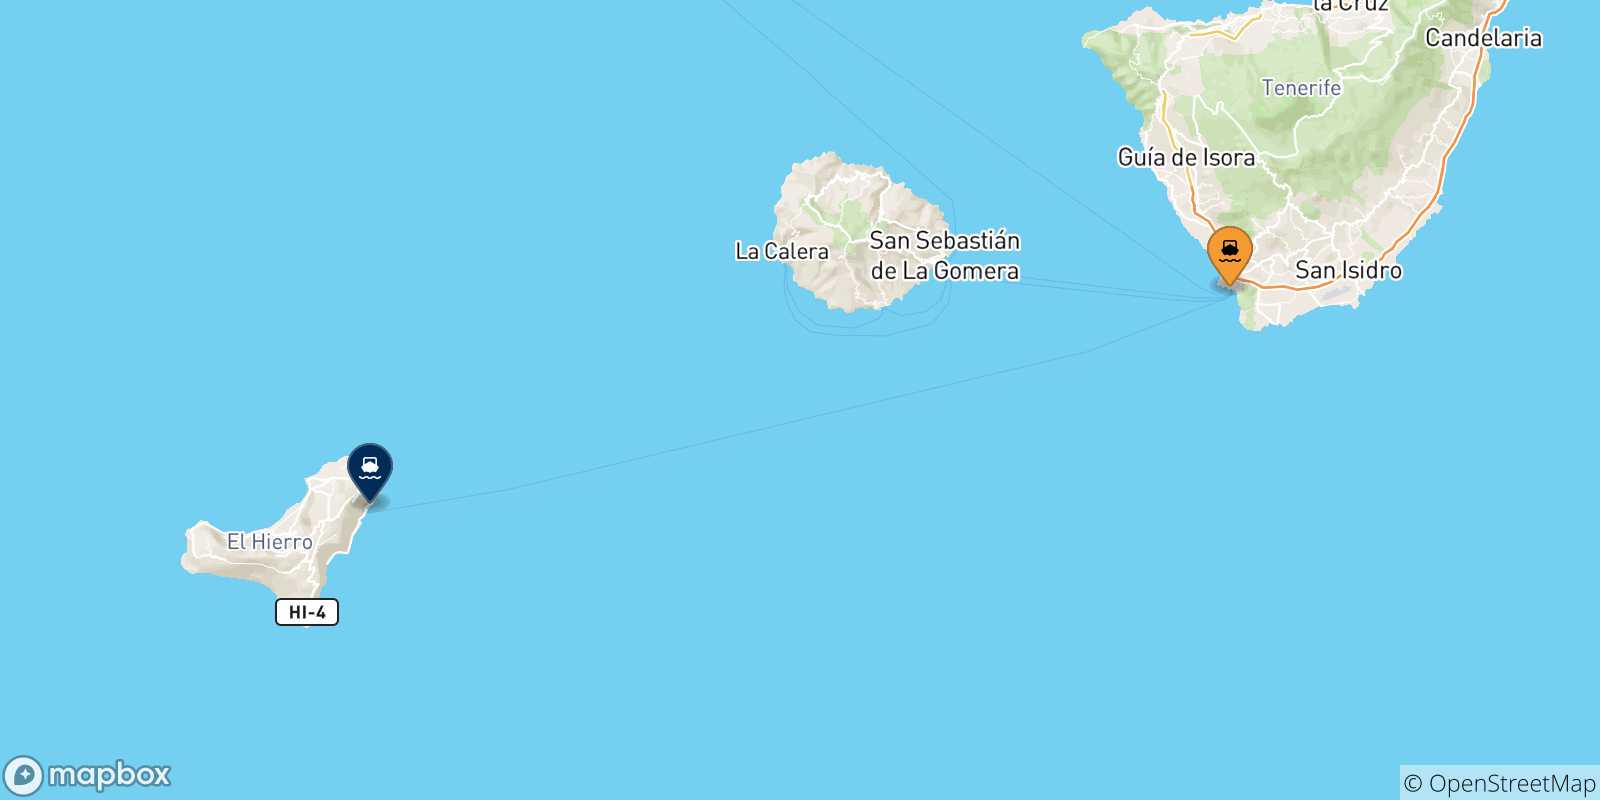 Mappa delle possibili rotte tra Los Cristianos (Tenerife) e le Isole Canarie